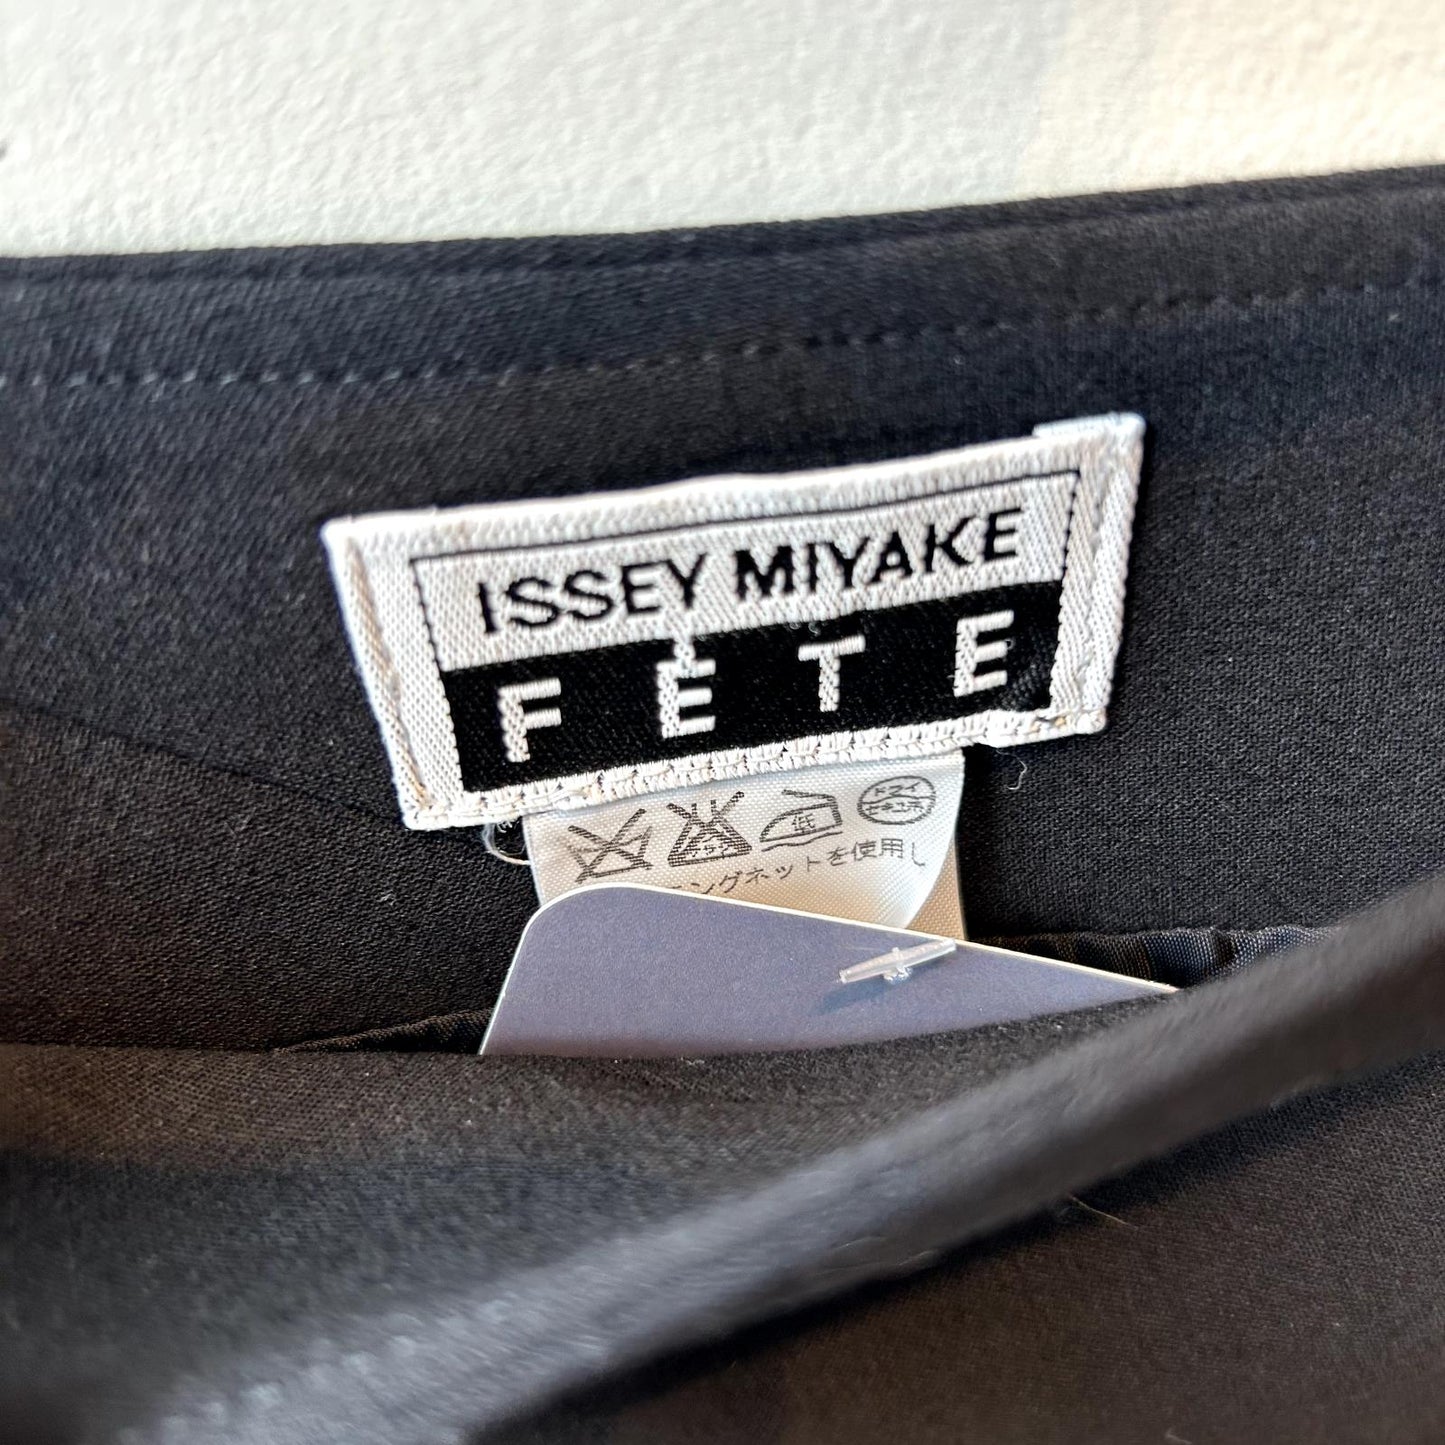 S - Fete by Issey Miyake Japan Black Knee Length Wool Blend Skirt 0504AK